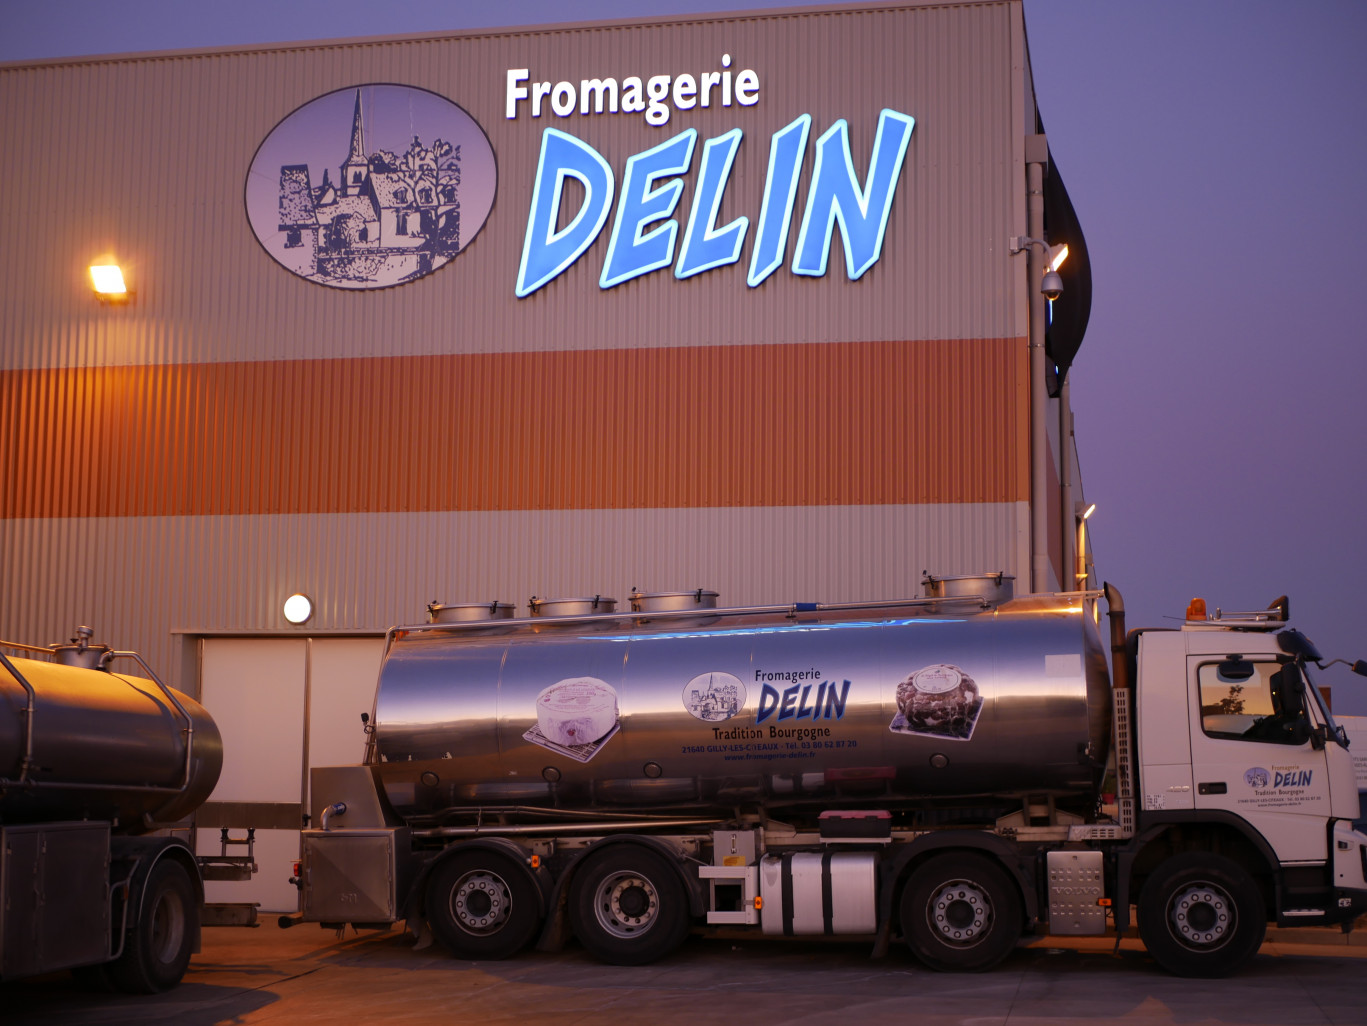 La fromagerie Delin mise sur l’ancrage local de ses produits pour se développer. (@Fromagerie Delin)